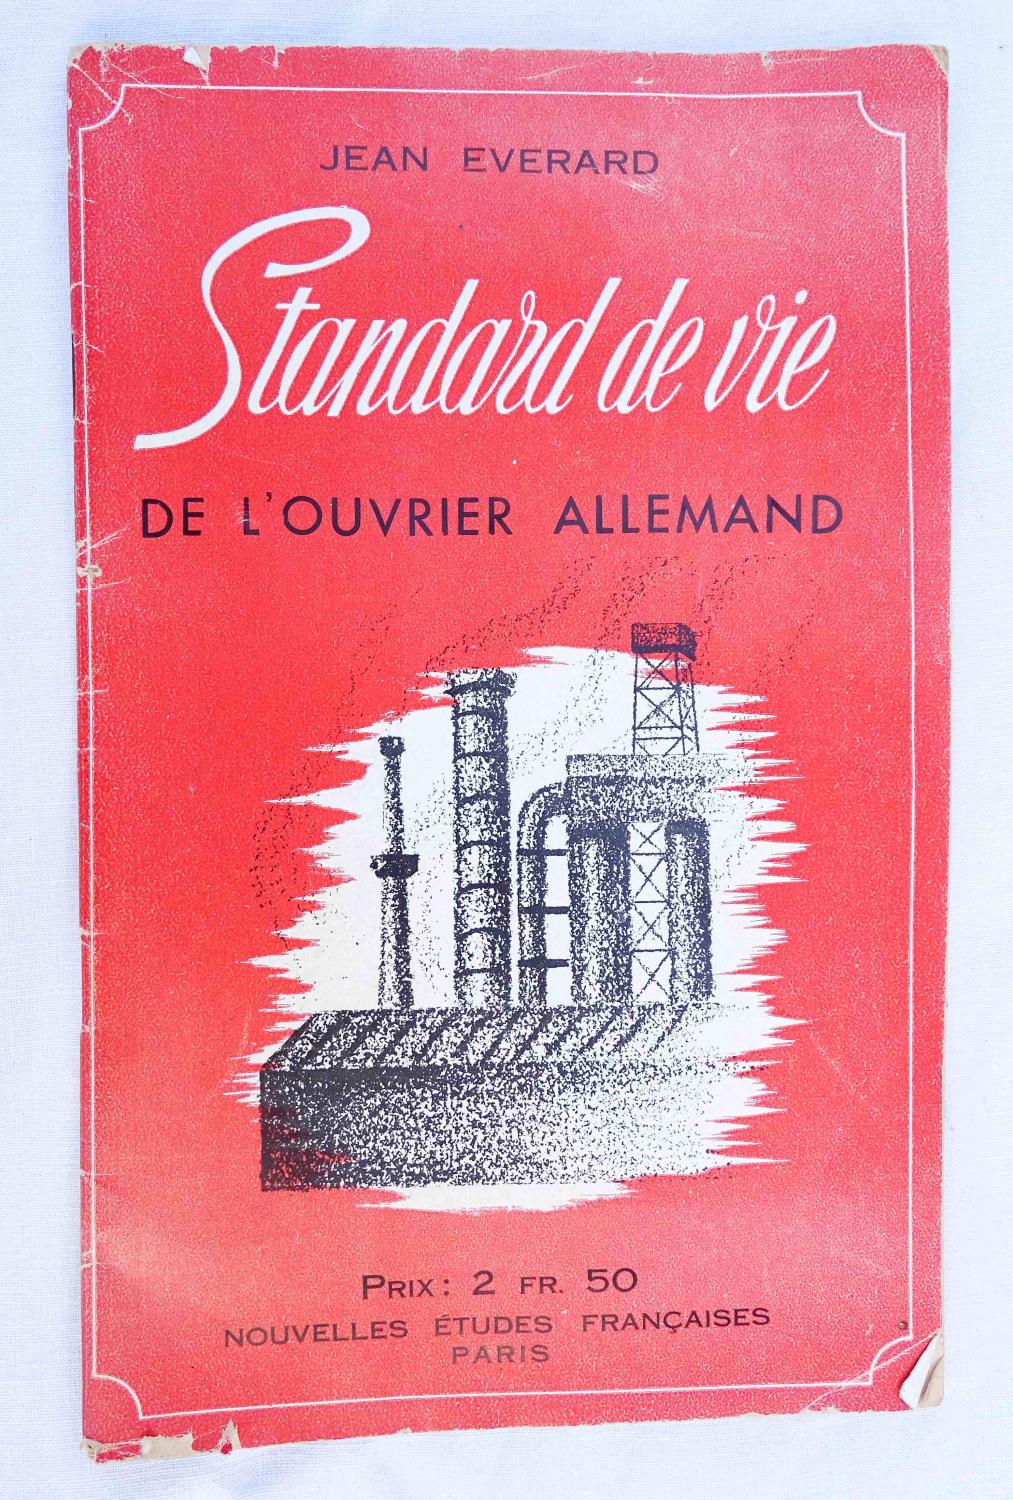 Livret de propagande allemande Standard de vie de l'Ouvrier allemand J.  Everard  WW2 Collaboration